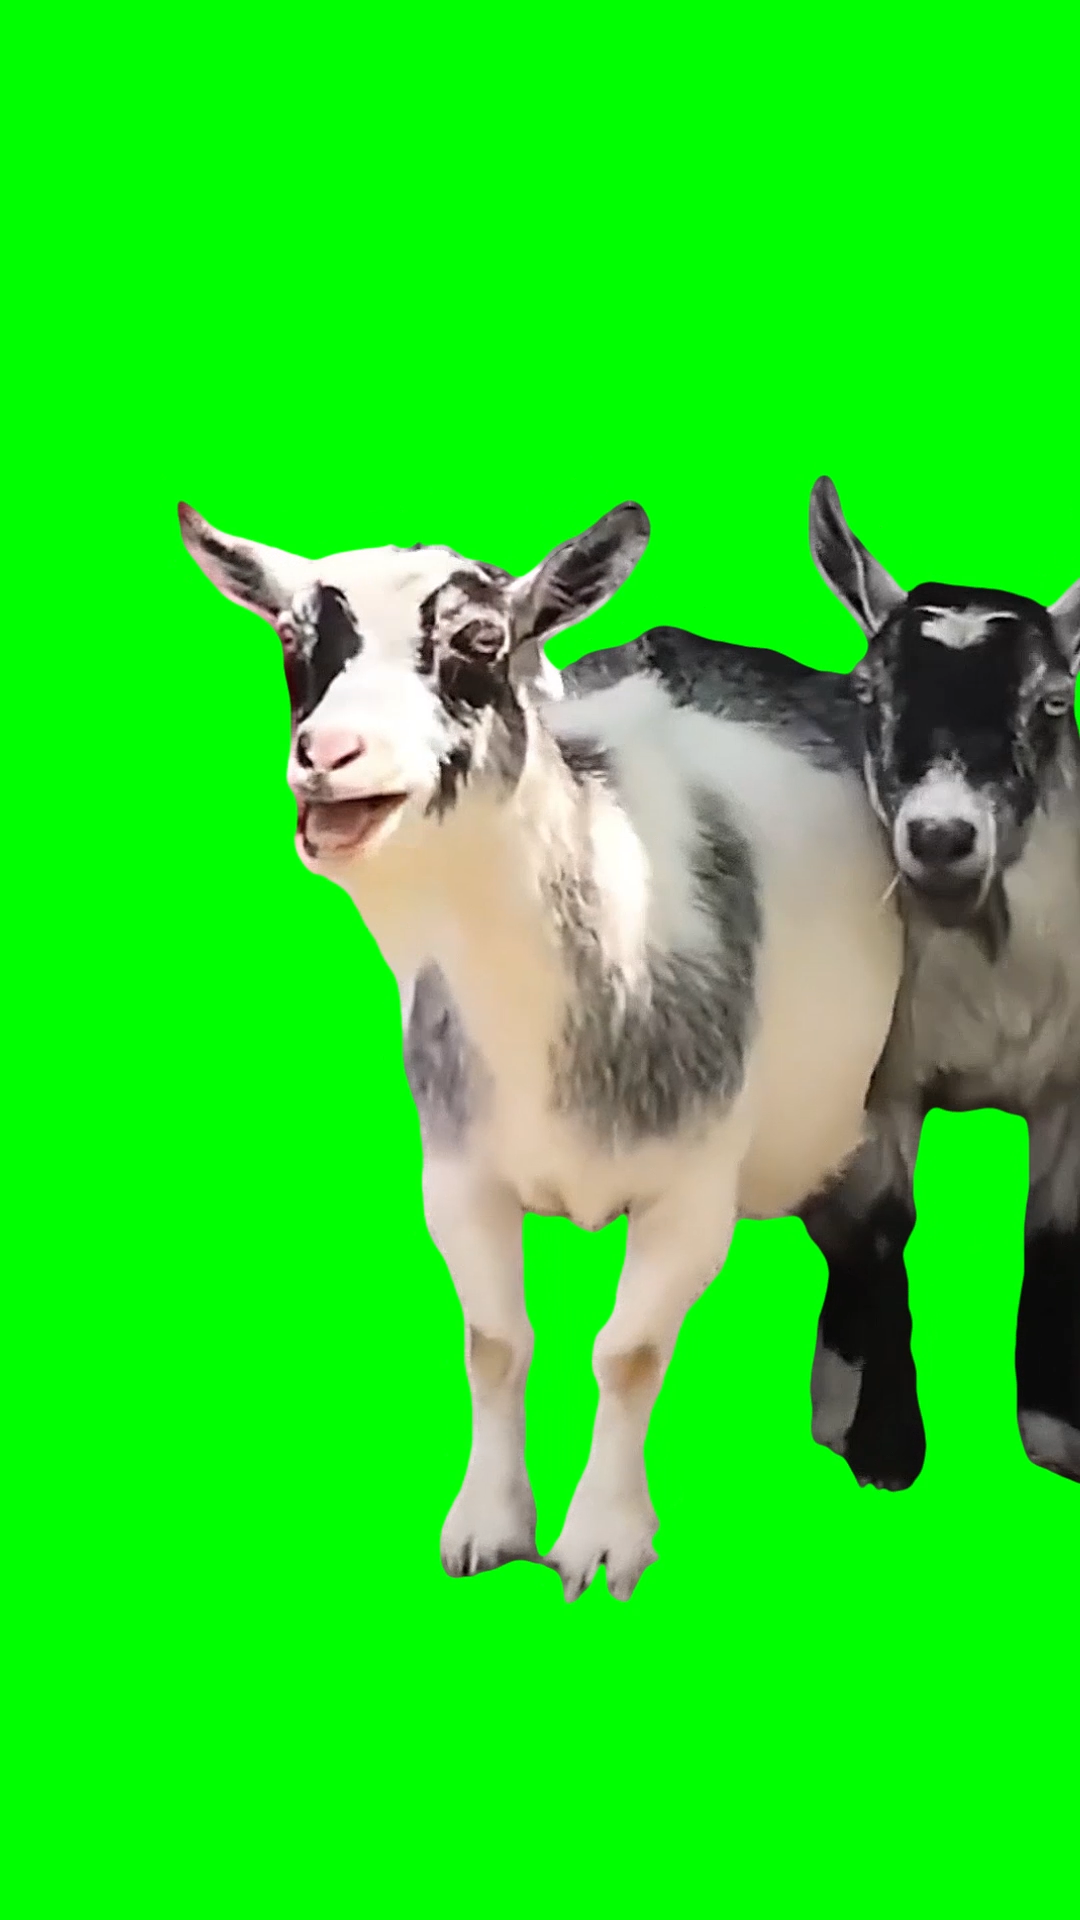 2 Goats Laughing meme (Green Screen)